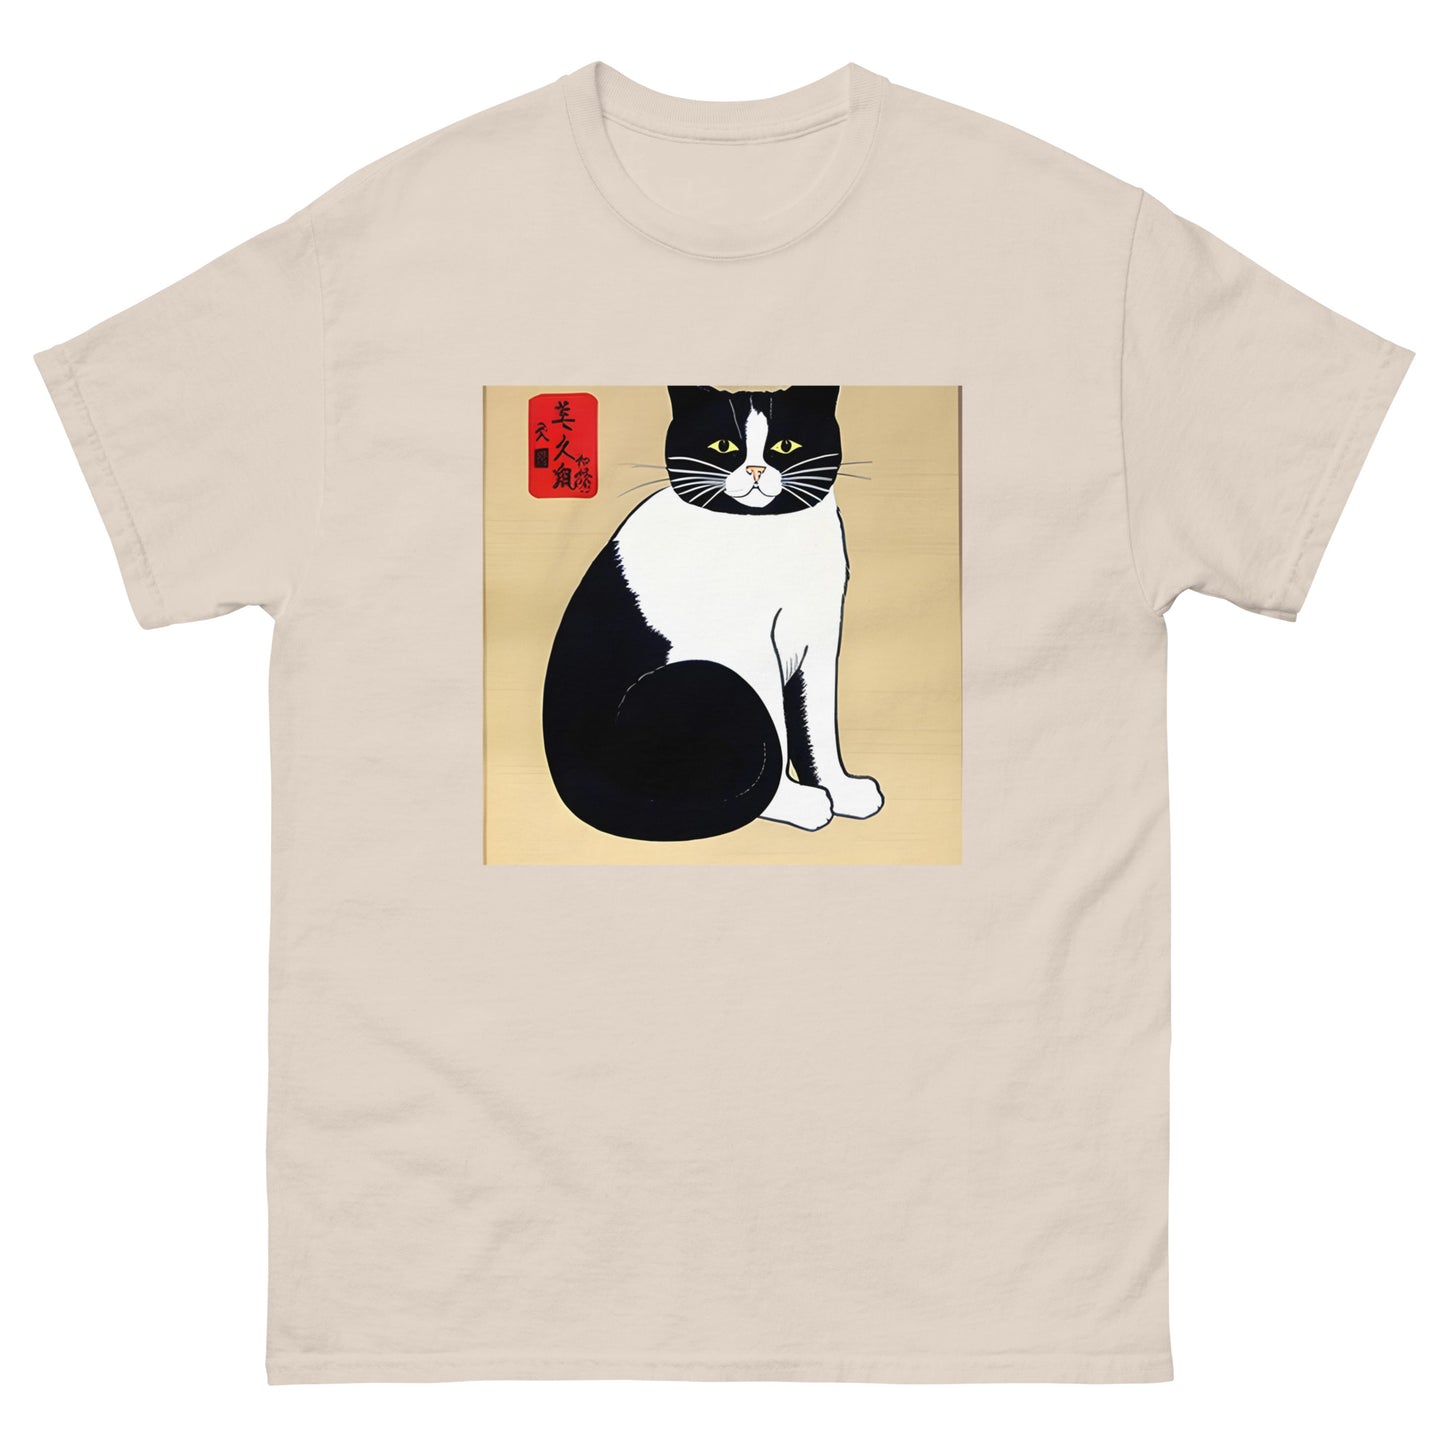 Meowsome Men's T-Shirt - 026